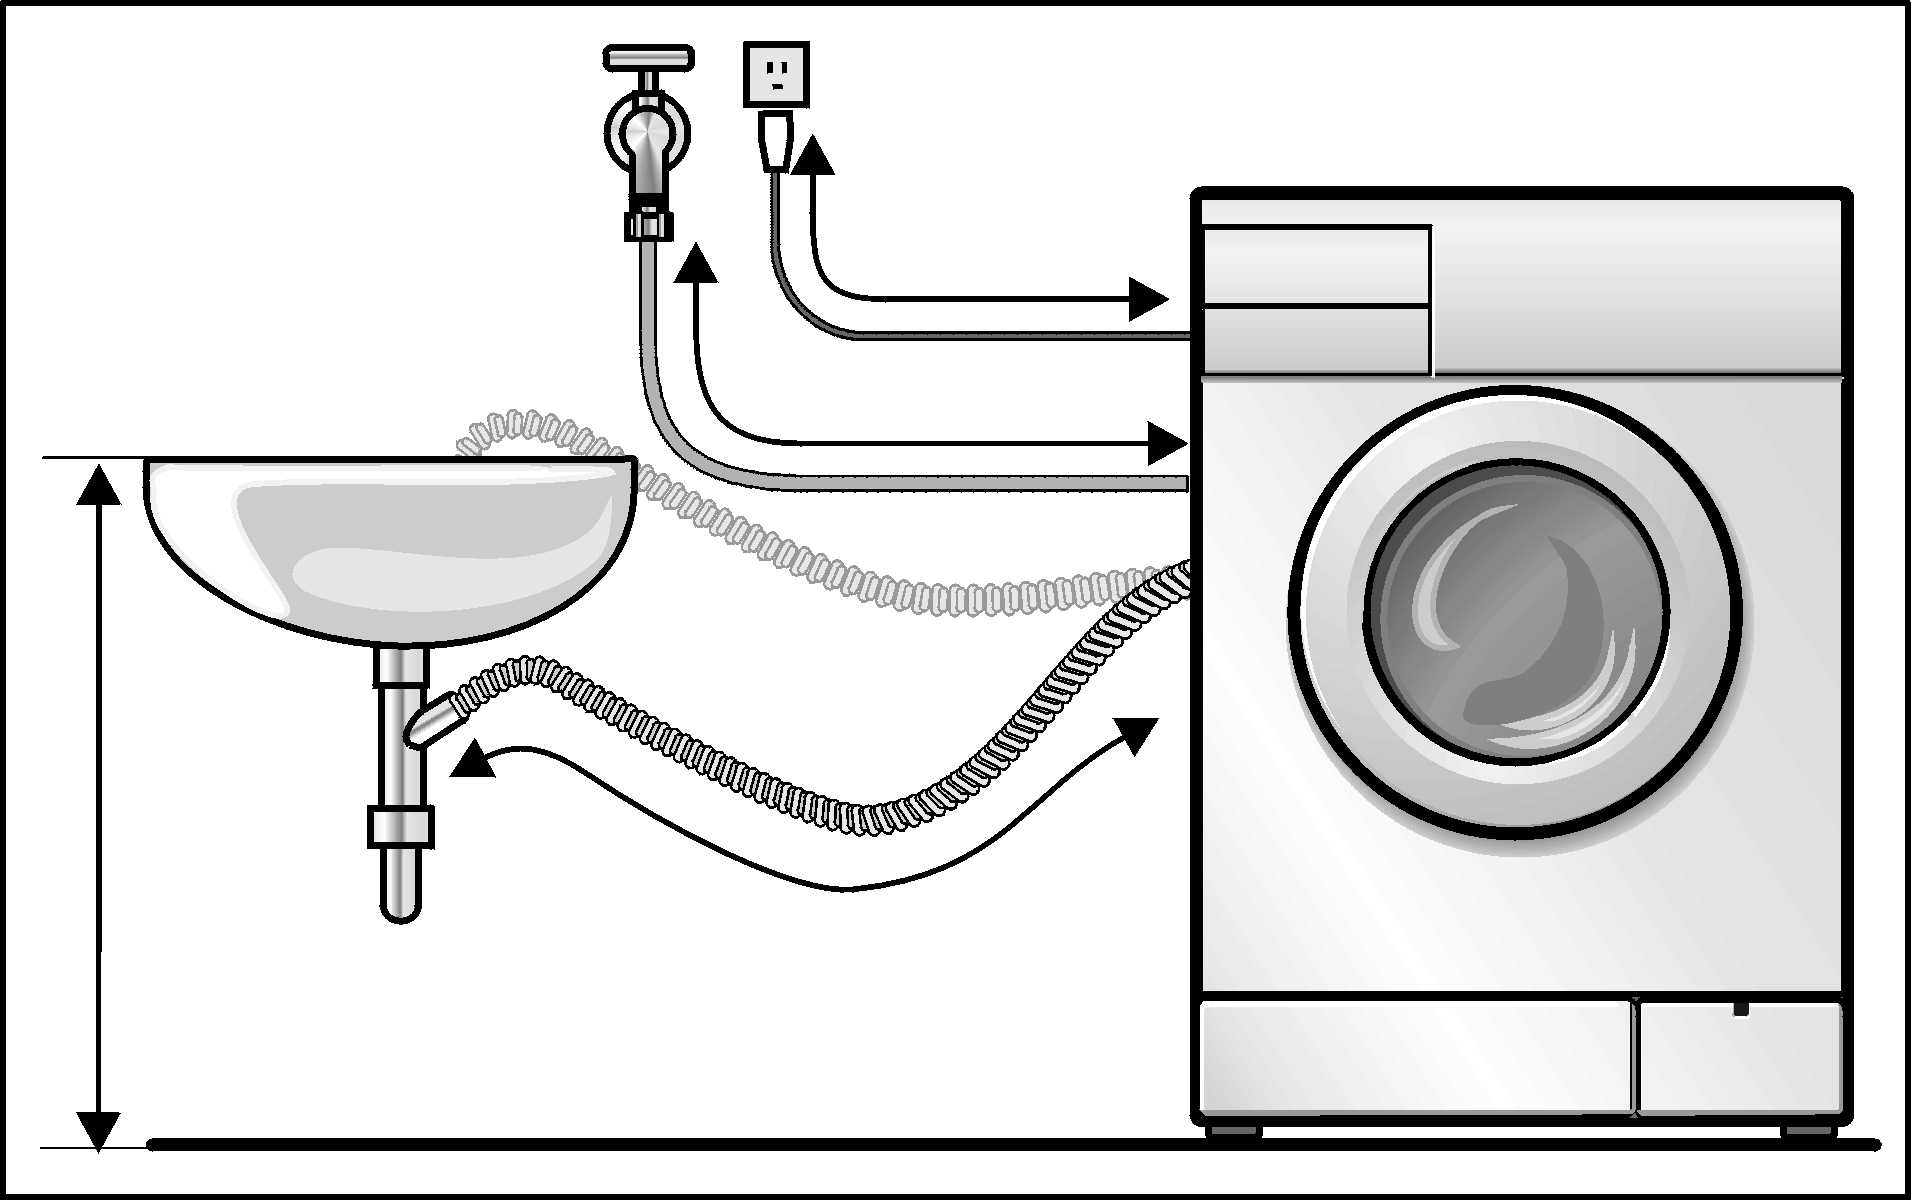 Как установить стиральную машину своими руками?